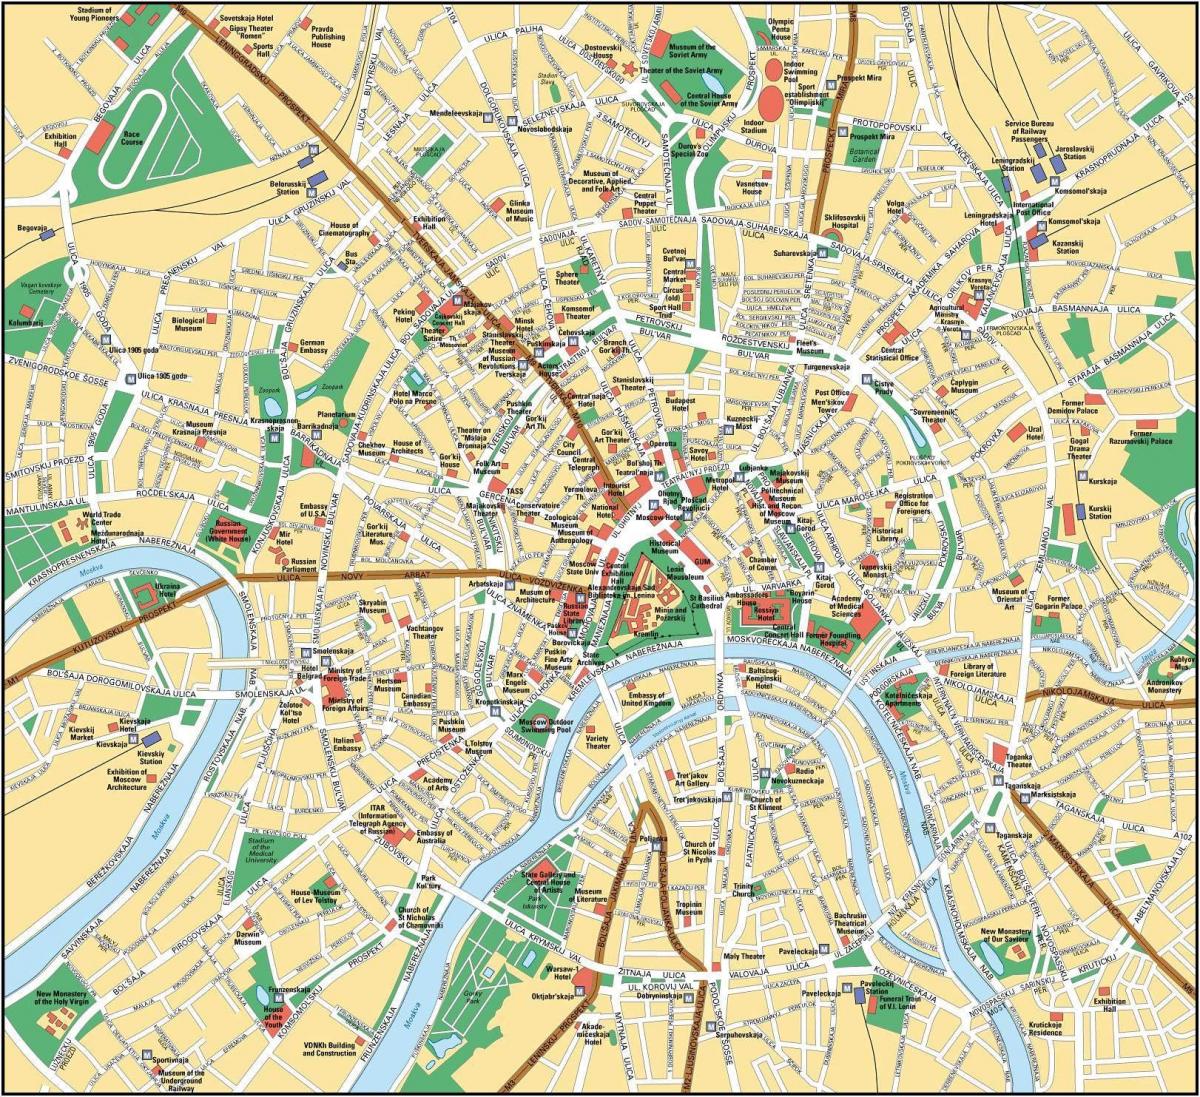 χάρτης της Μόσχας στα αγγλικά